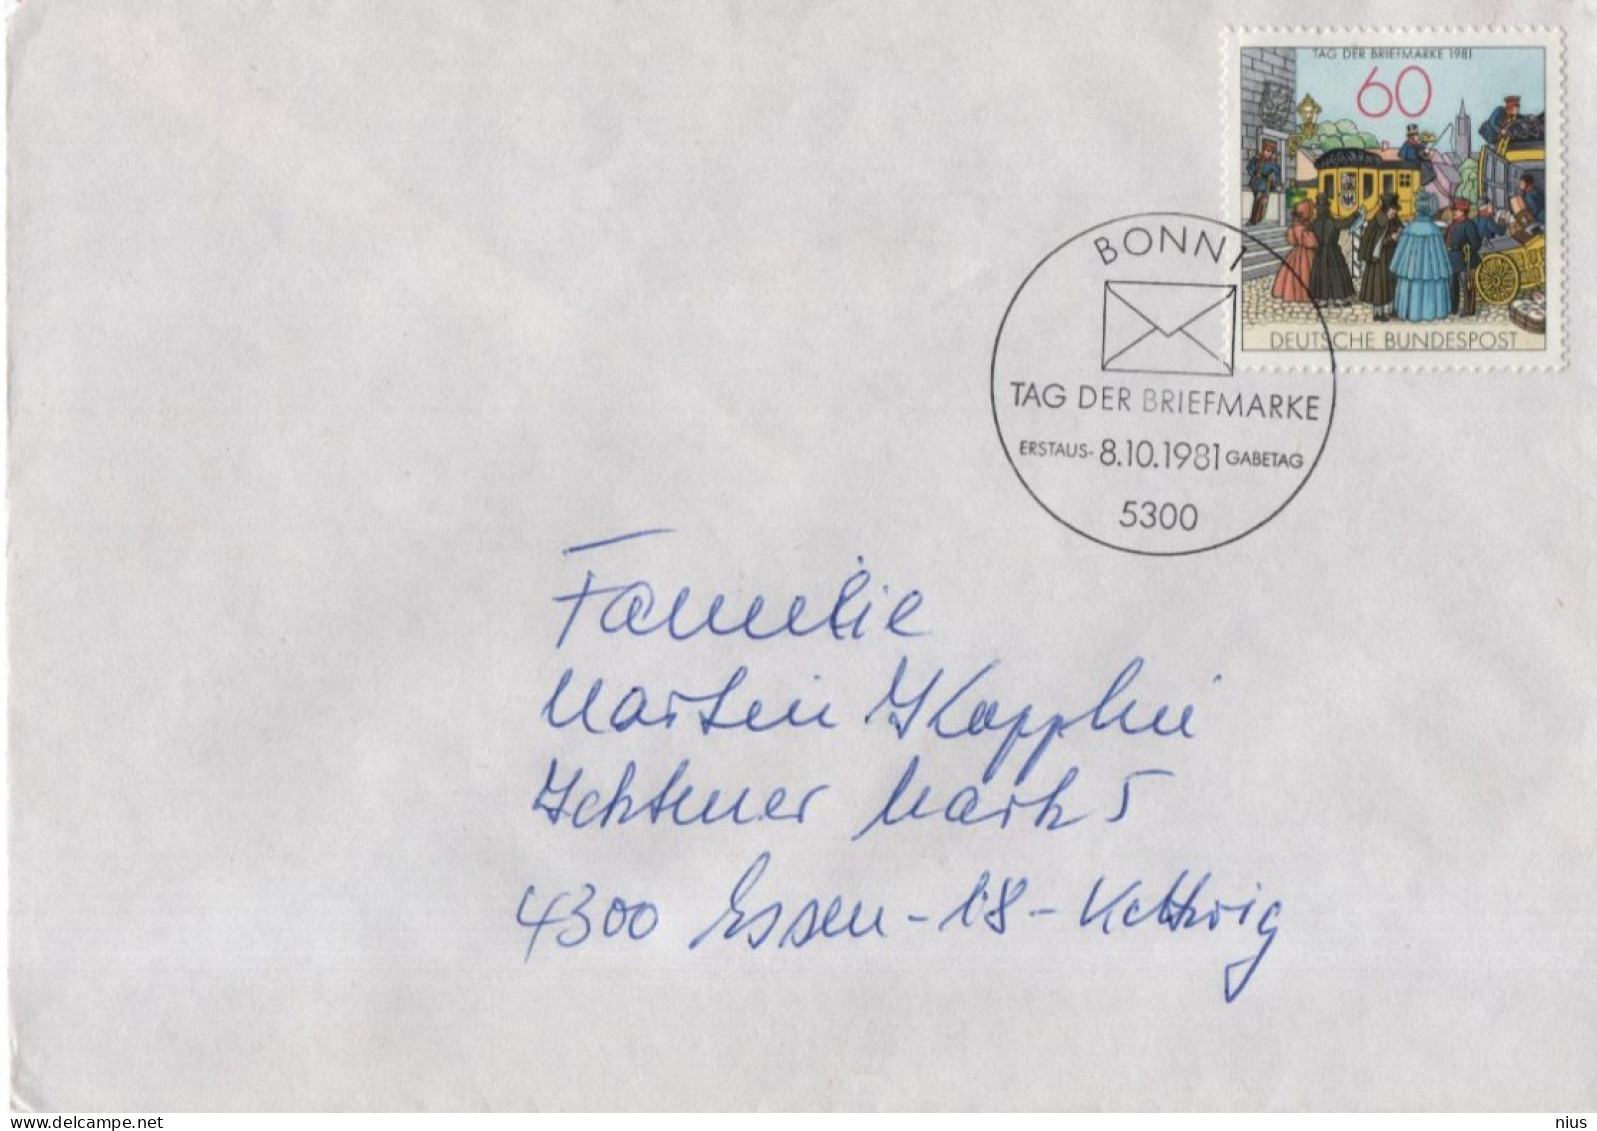 Germany Deutschland 1981 FDC Tag Der Briefmarke, Stamp Day, Canceled In Bonn - 1981-1990